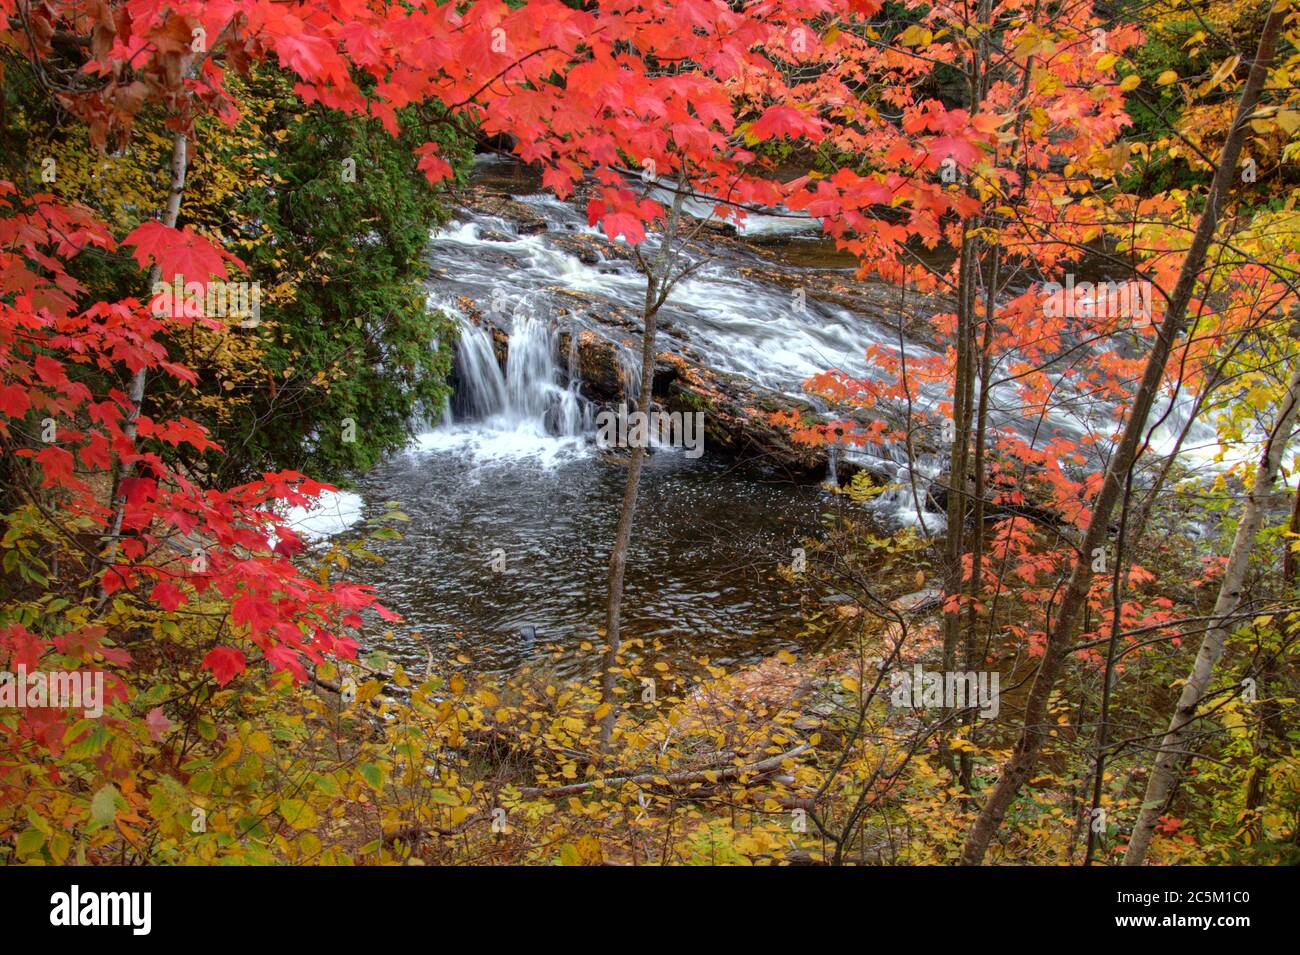 Cascade du Michigan encadrée par des couleurs vives d'automne sur la rivière Falls, dans la ville de l'Anse, dans la péninsule supérieure. Banque D'Images